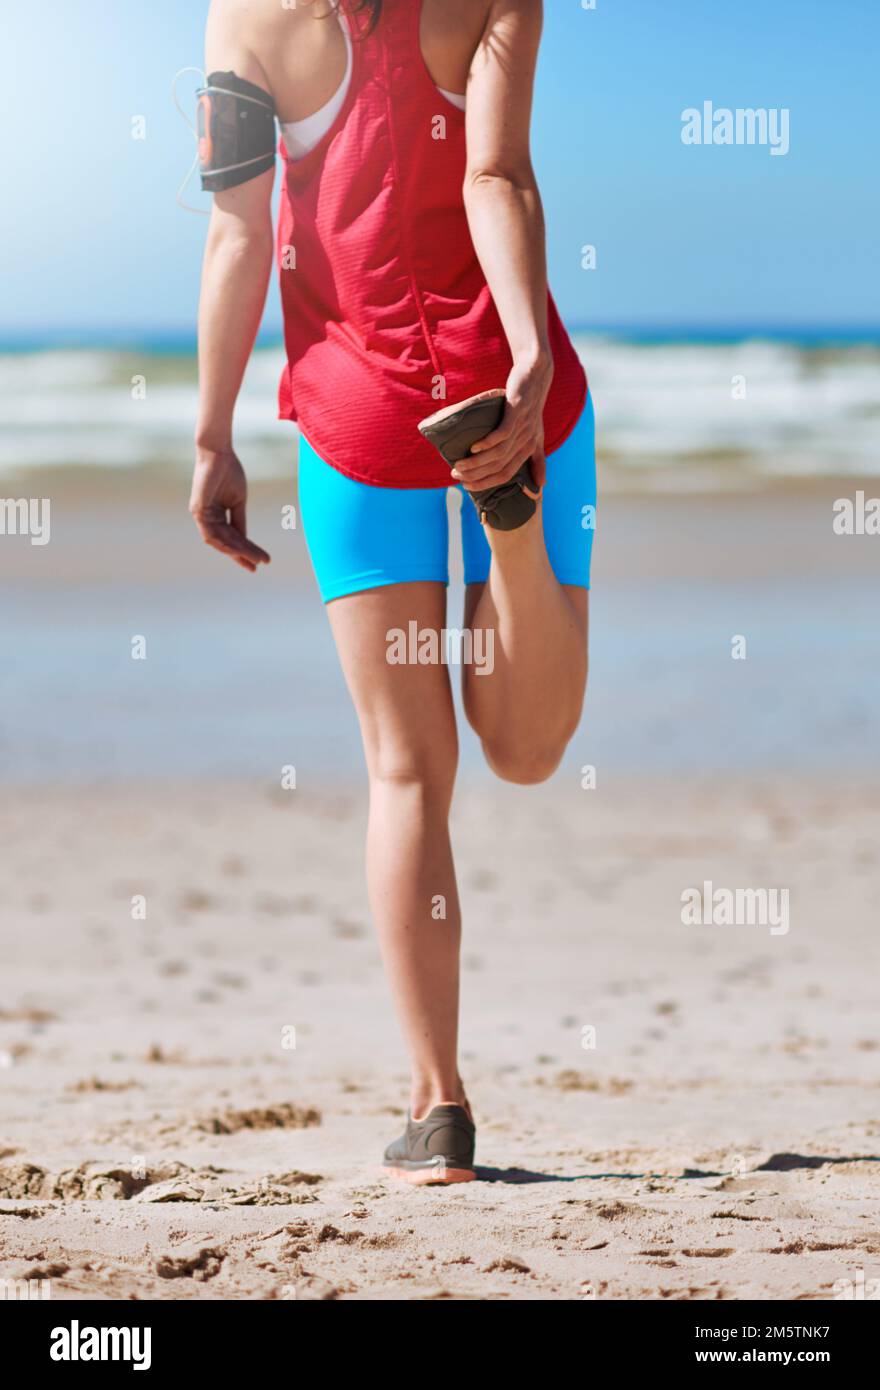 Allungamento per evitare lesioni. Ripresa retroversa di una giovane donna che si allunga prima della sua corsa sulla spiaggia. Foto Stock